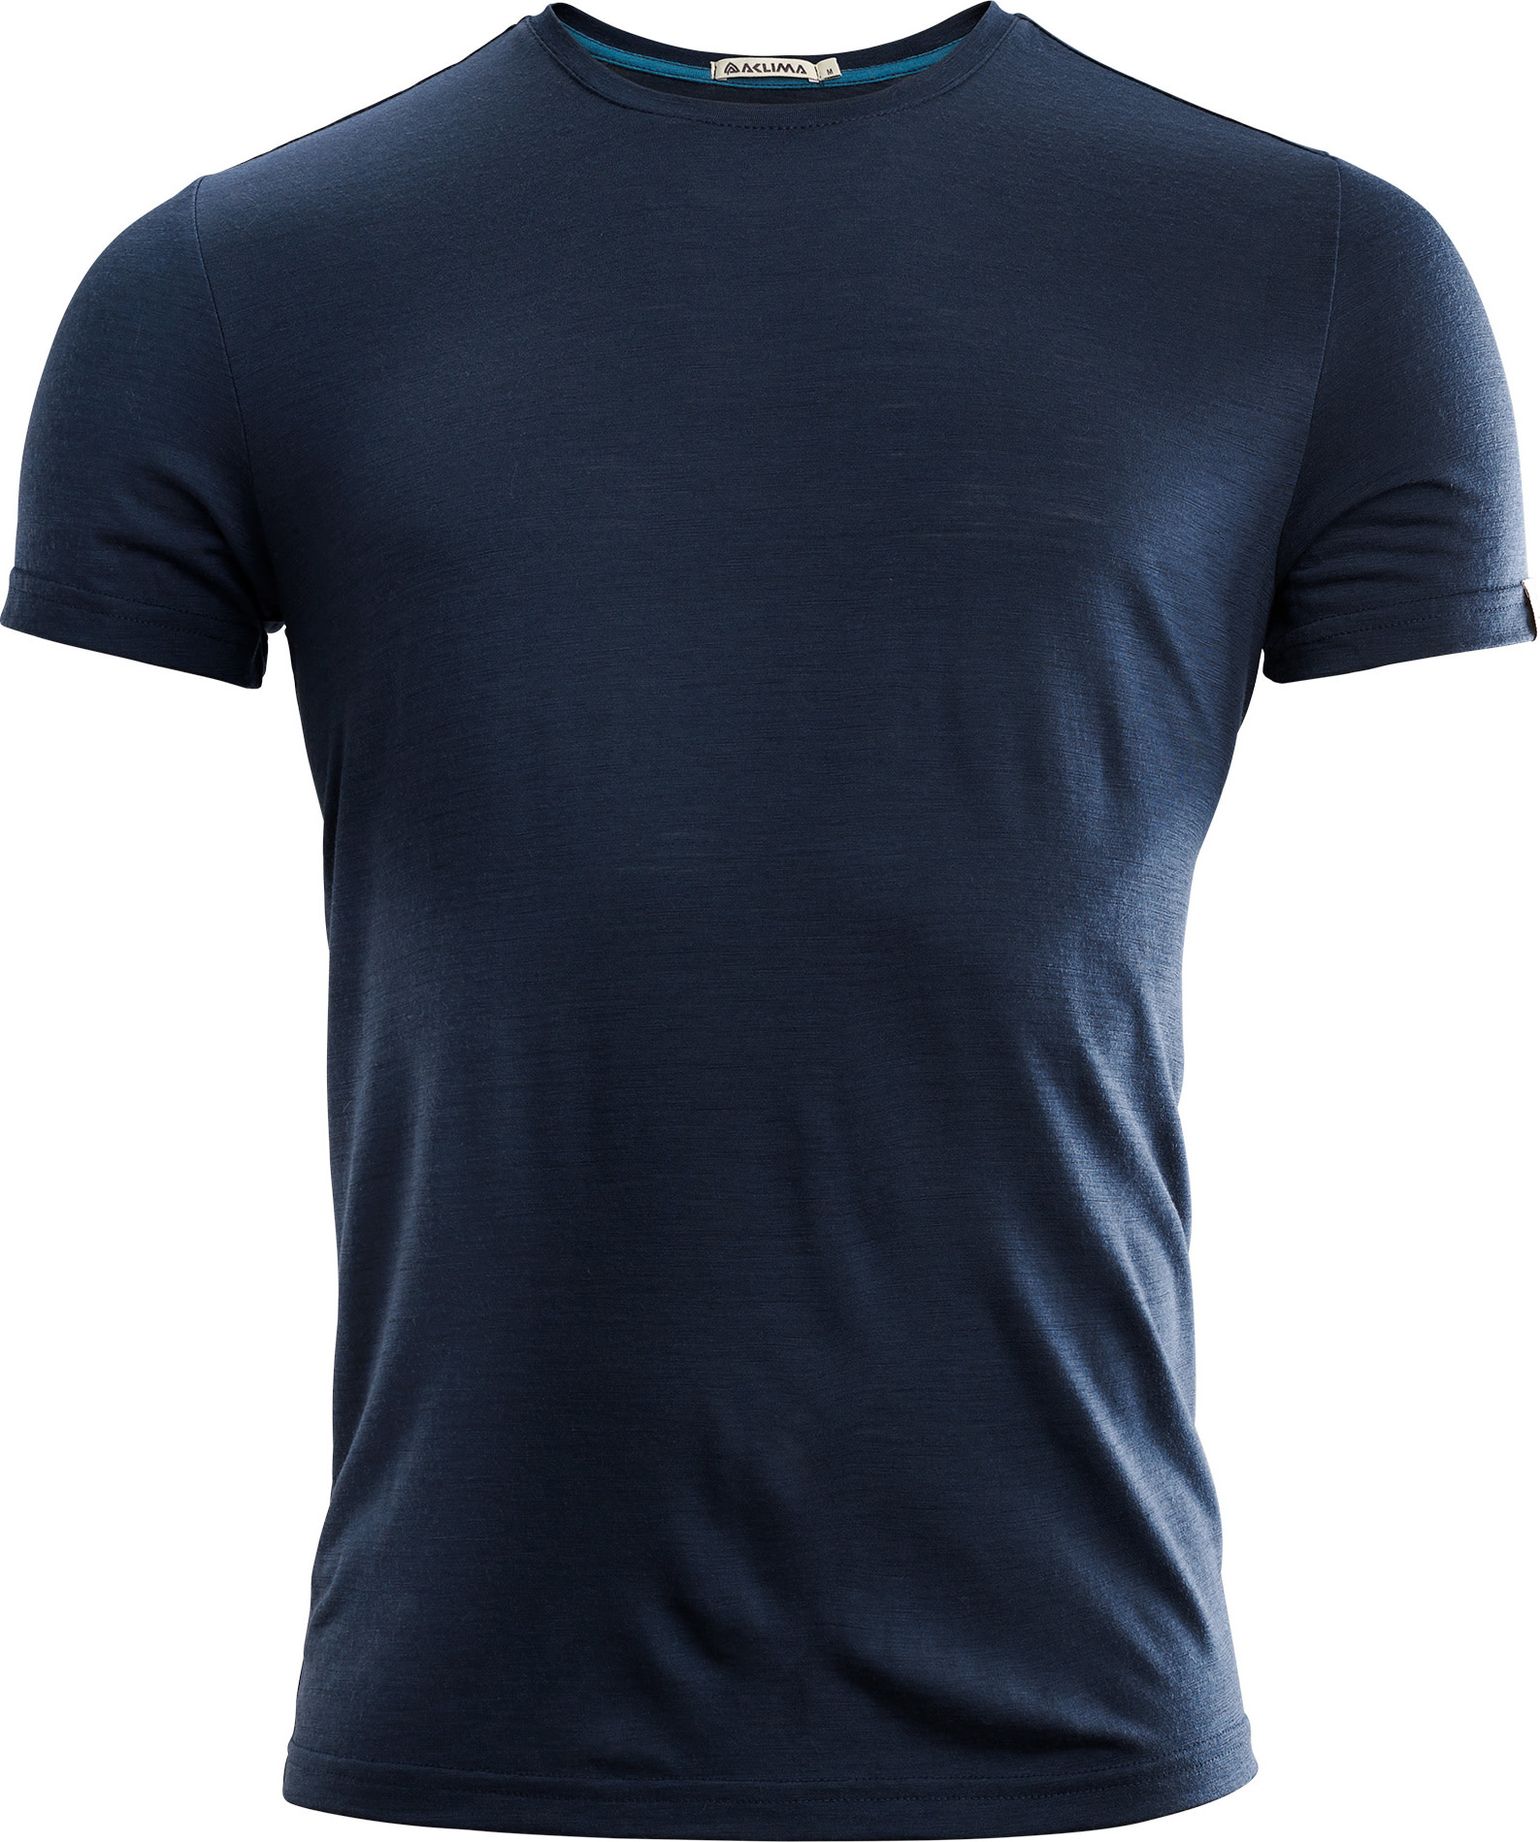 Men's LightWool T-shirt Round Neck Navy Blazer